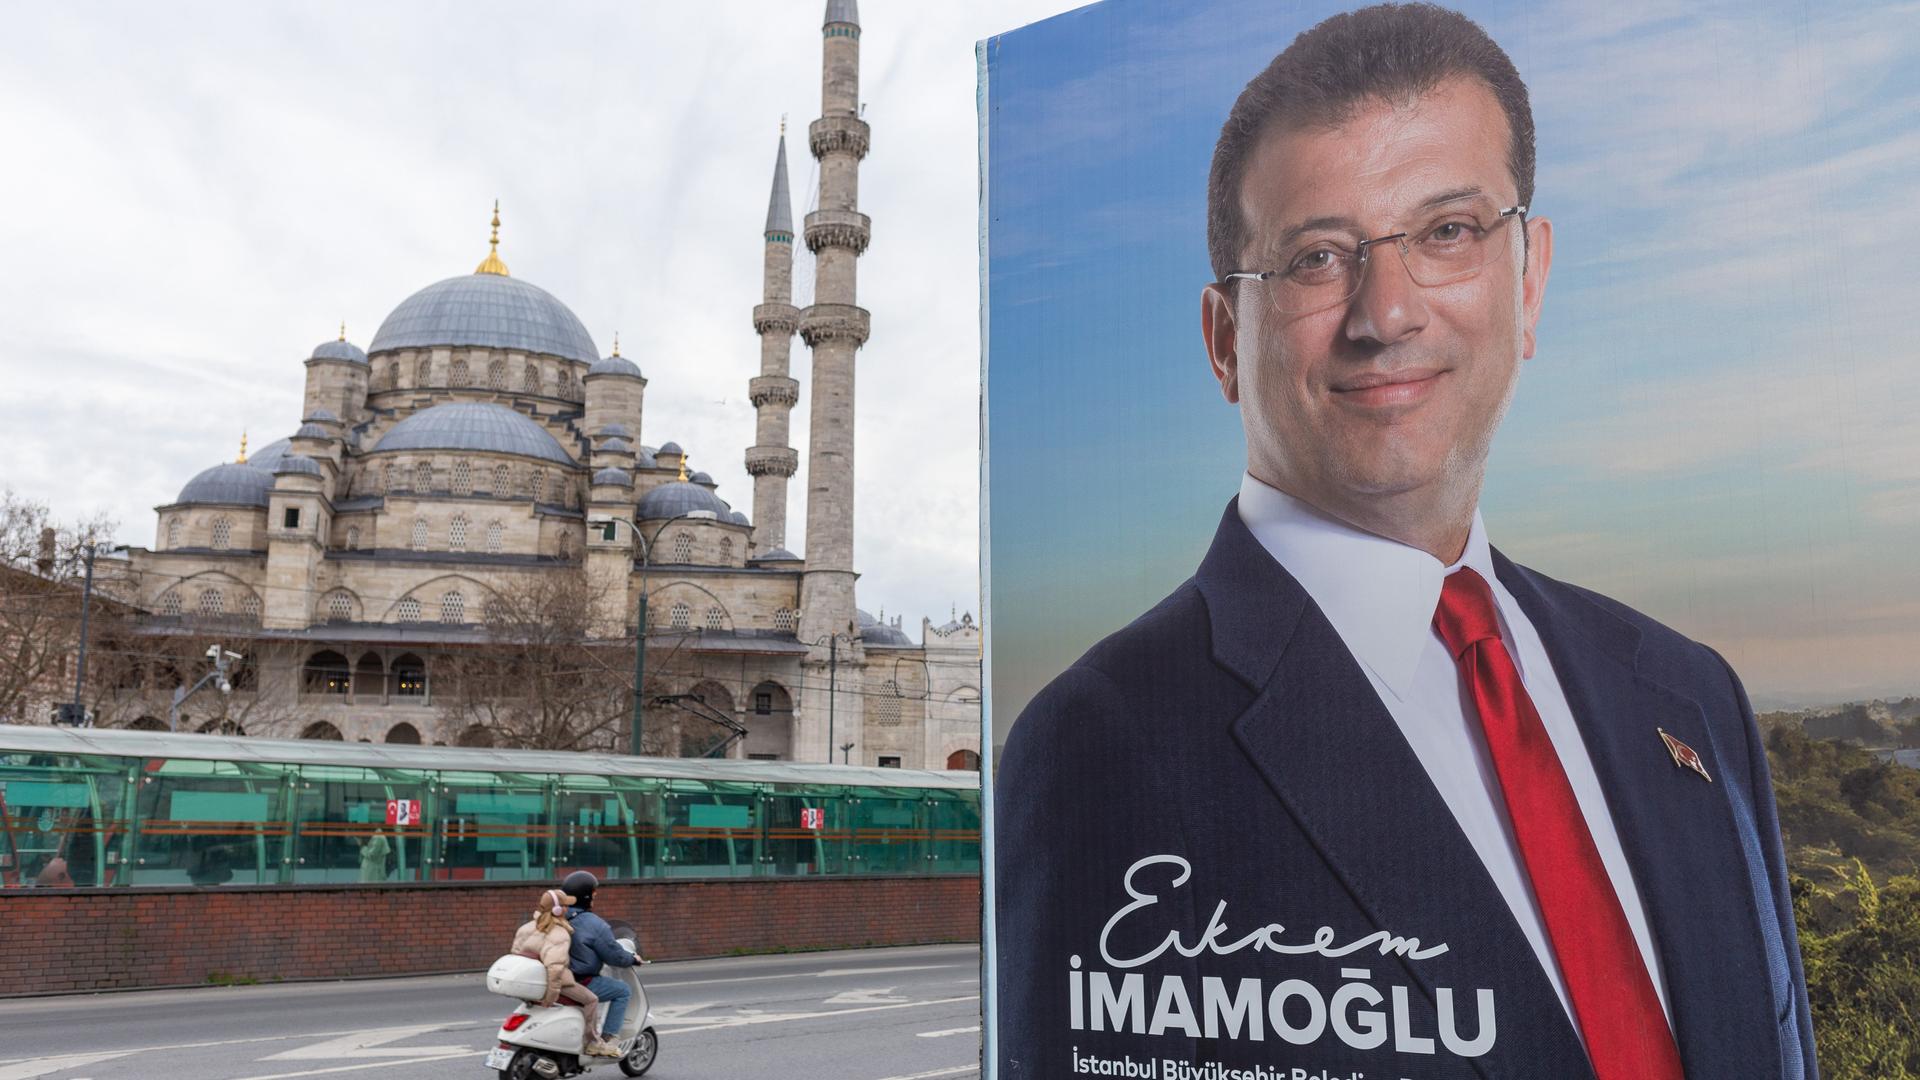 Ein Wahlkampfplakat des Bürgermeisters von Istanbul. Im Hintergrund eine Moschee.